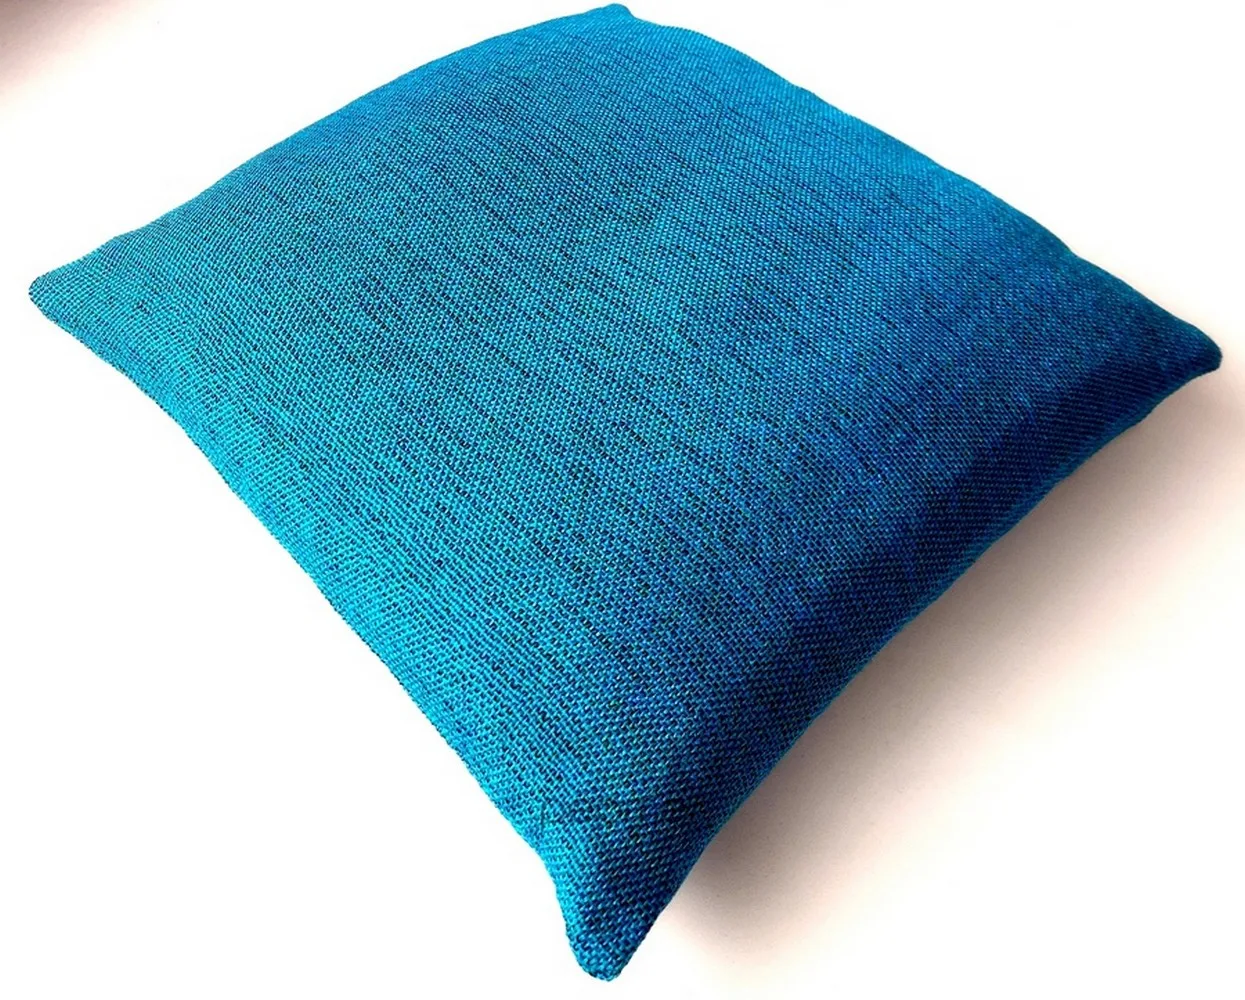 Jute Plain Cushion Cover, Hidden Chain, 16x16 inches, Royal Blue, Pack of 5